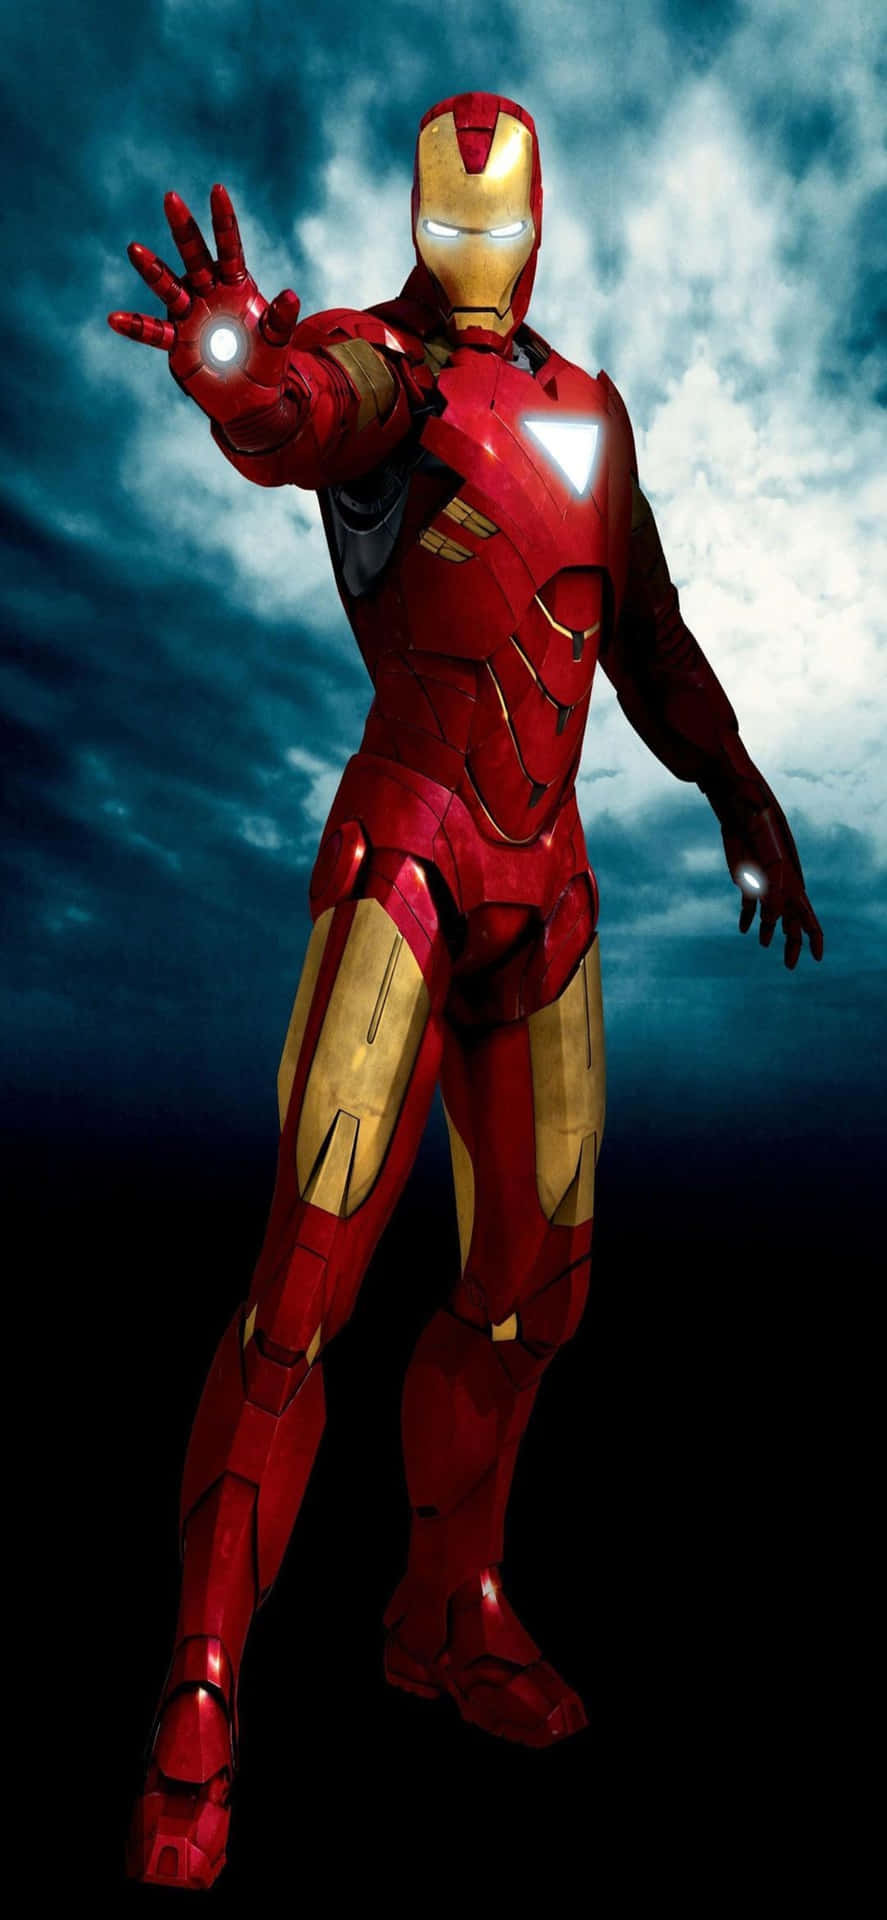 Iphonex Iron Man Hintergrund Iron Man Mit Seiner Geöffneten Handfläche.